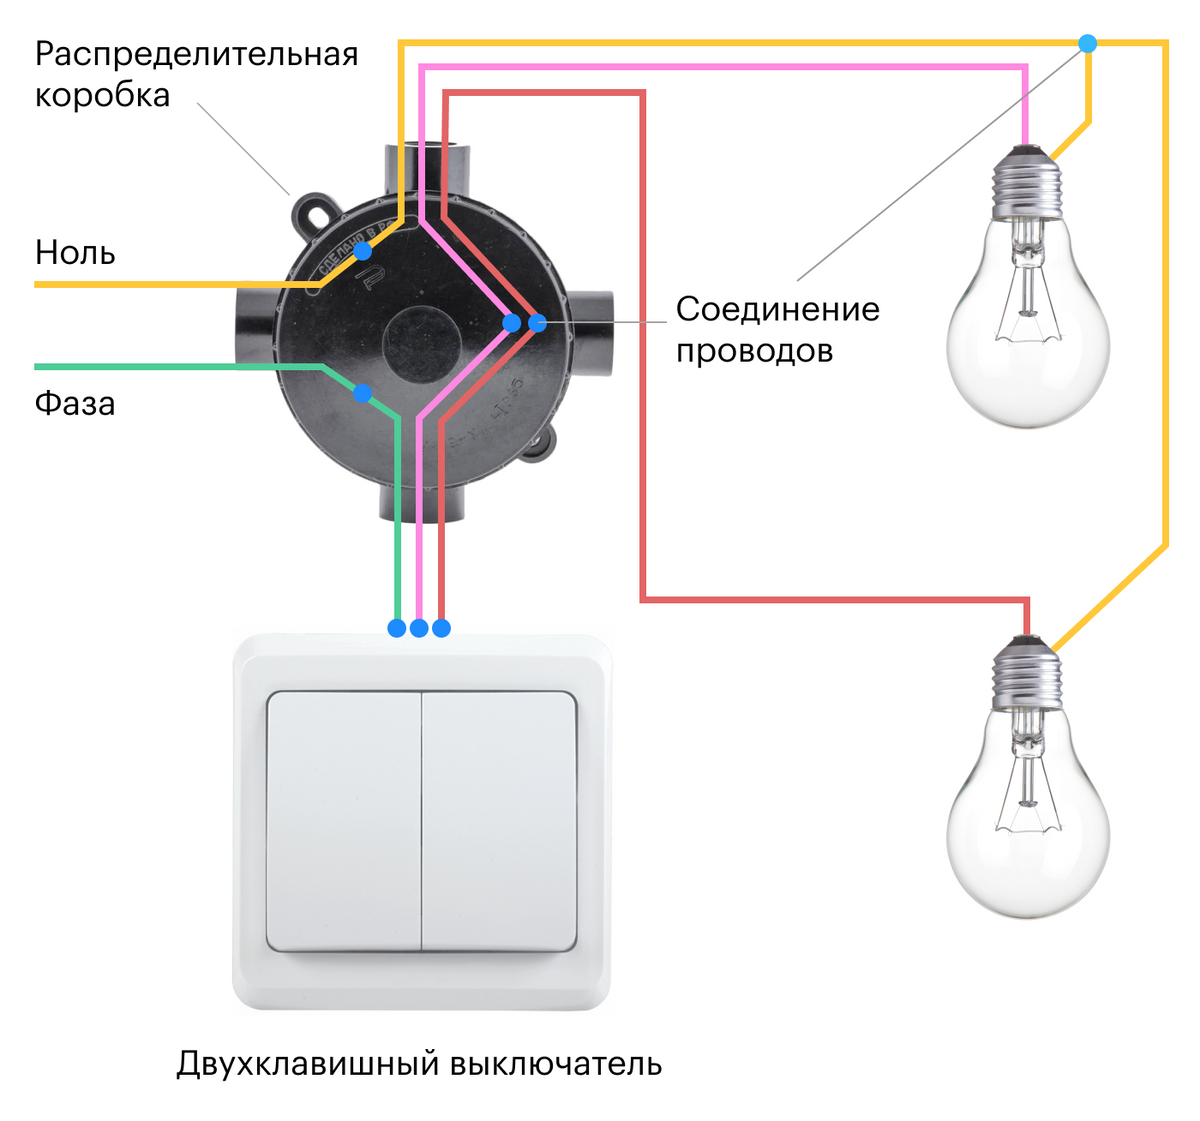 Как подключить выключатель switch. Соединение одинарного выключателя схема подключения. Схема подключения выключателя на две лампочки. Схема подключения распределительная коробка выключатель светильник. Схема подключения лампочки и выключателя к распред коробке.